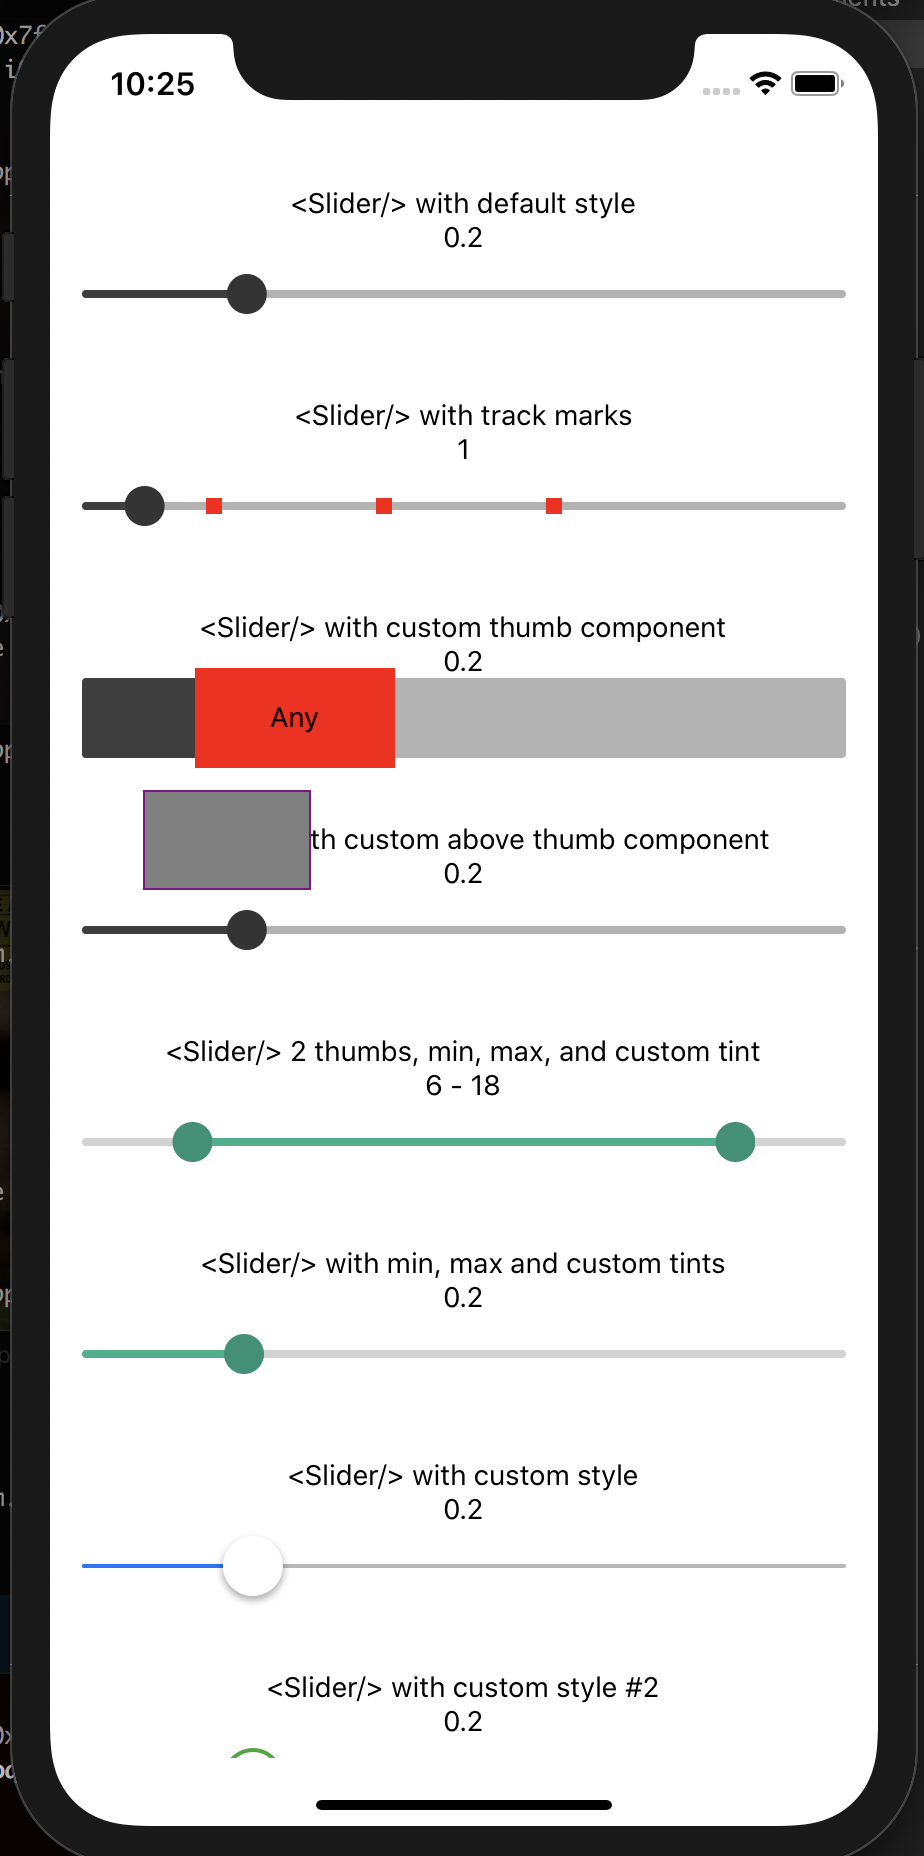 Gradient: Hãy khám phá hình ảnh về gradient trong slider React Native! Màu sắc chuyển đổi mượt mà sẽ khiến bạn cảm thấy như đang trải qua một trải nghiệm thị giác tuyệt vời. Bạn sẽ không muốn bỏ lỡ nó!